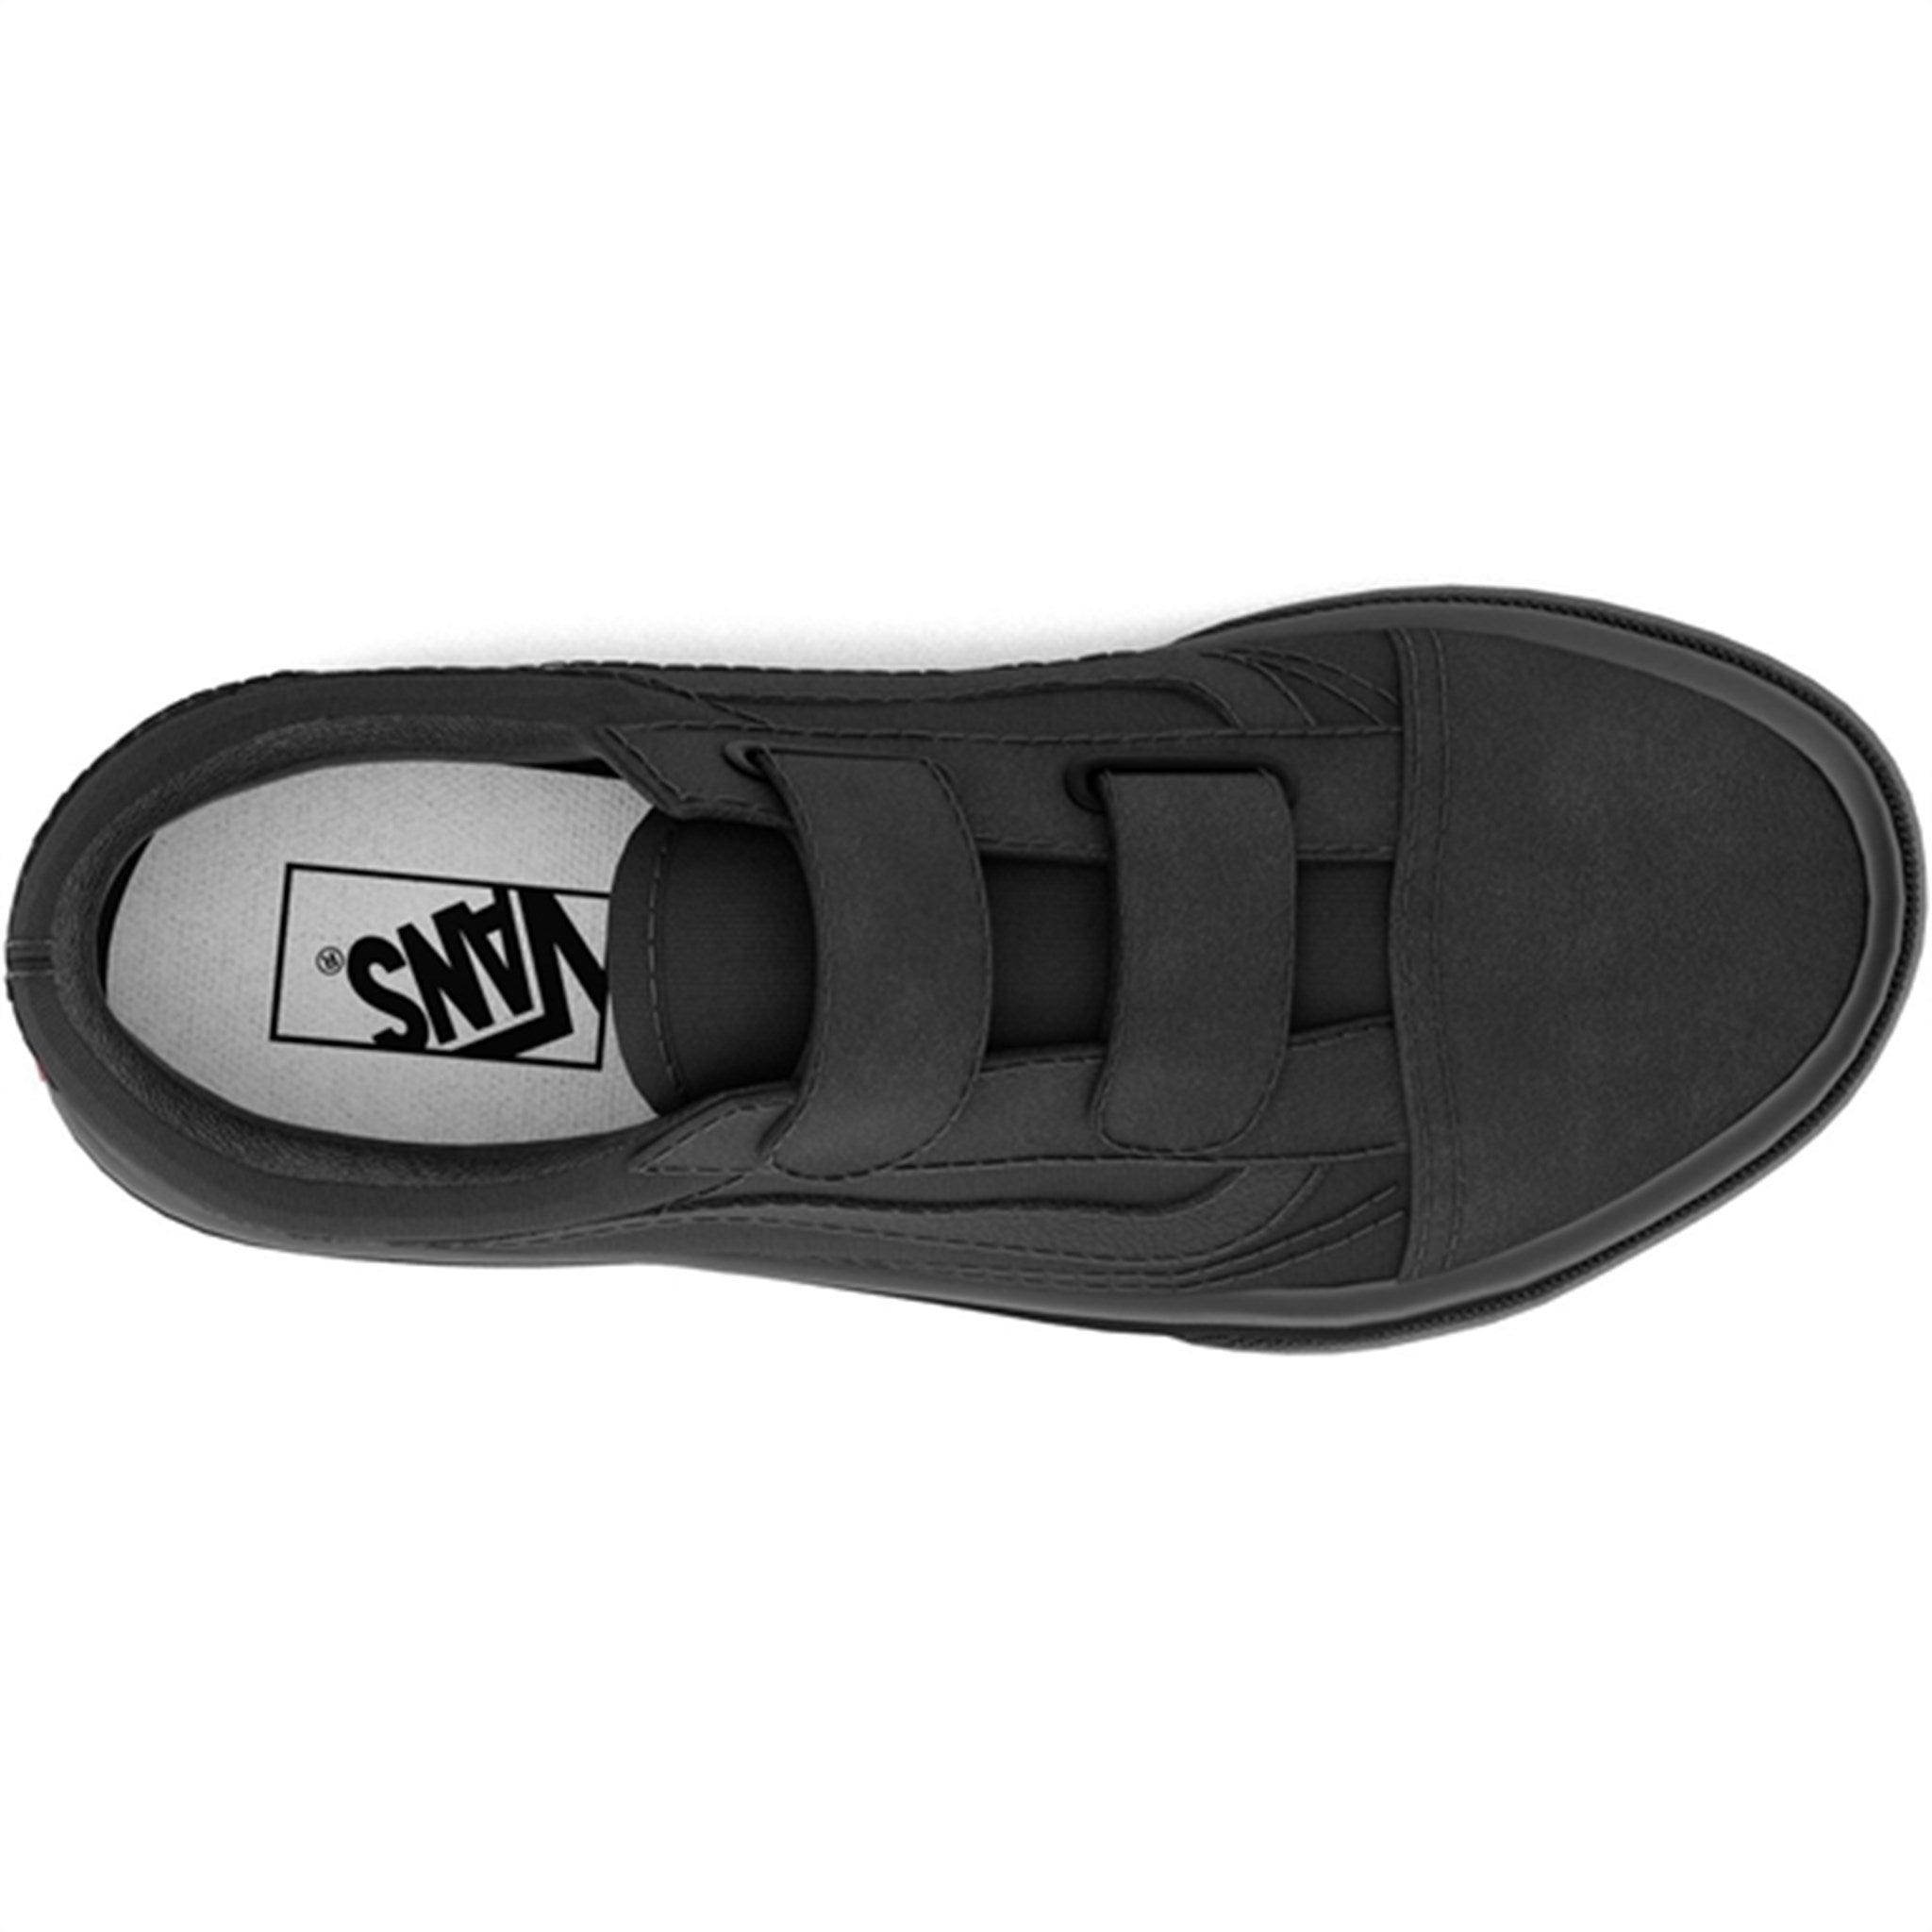 VANS Uy Old Skool V Black/Black Sneakers 2